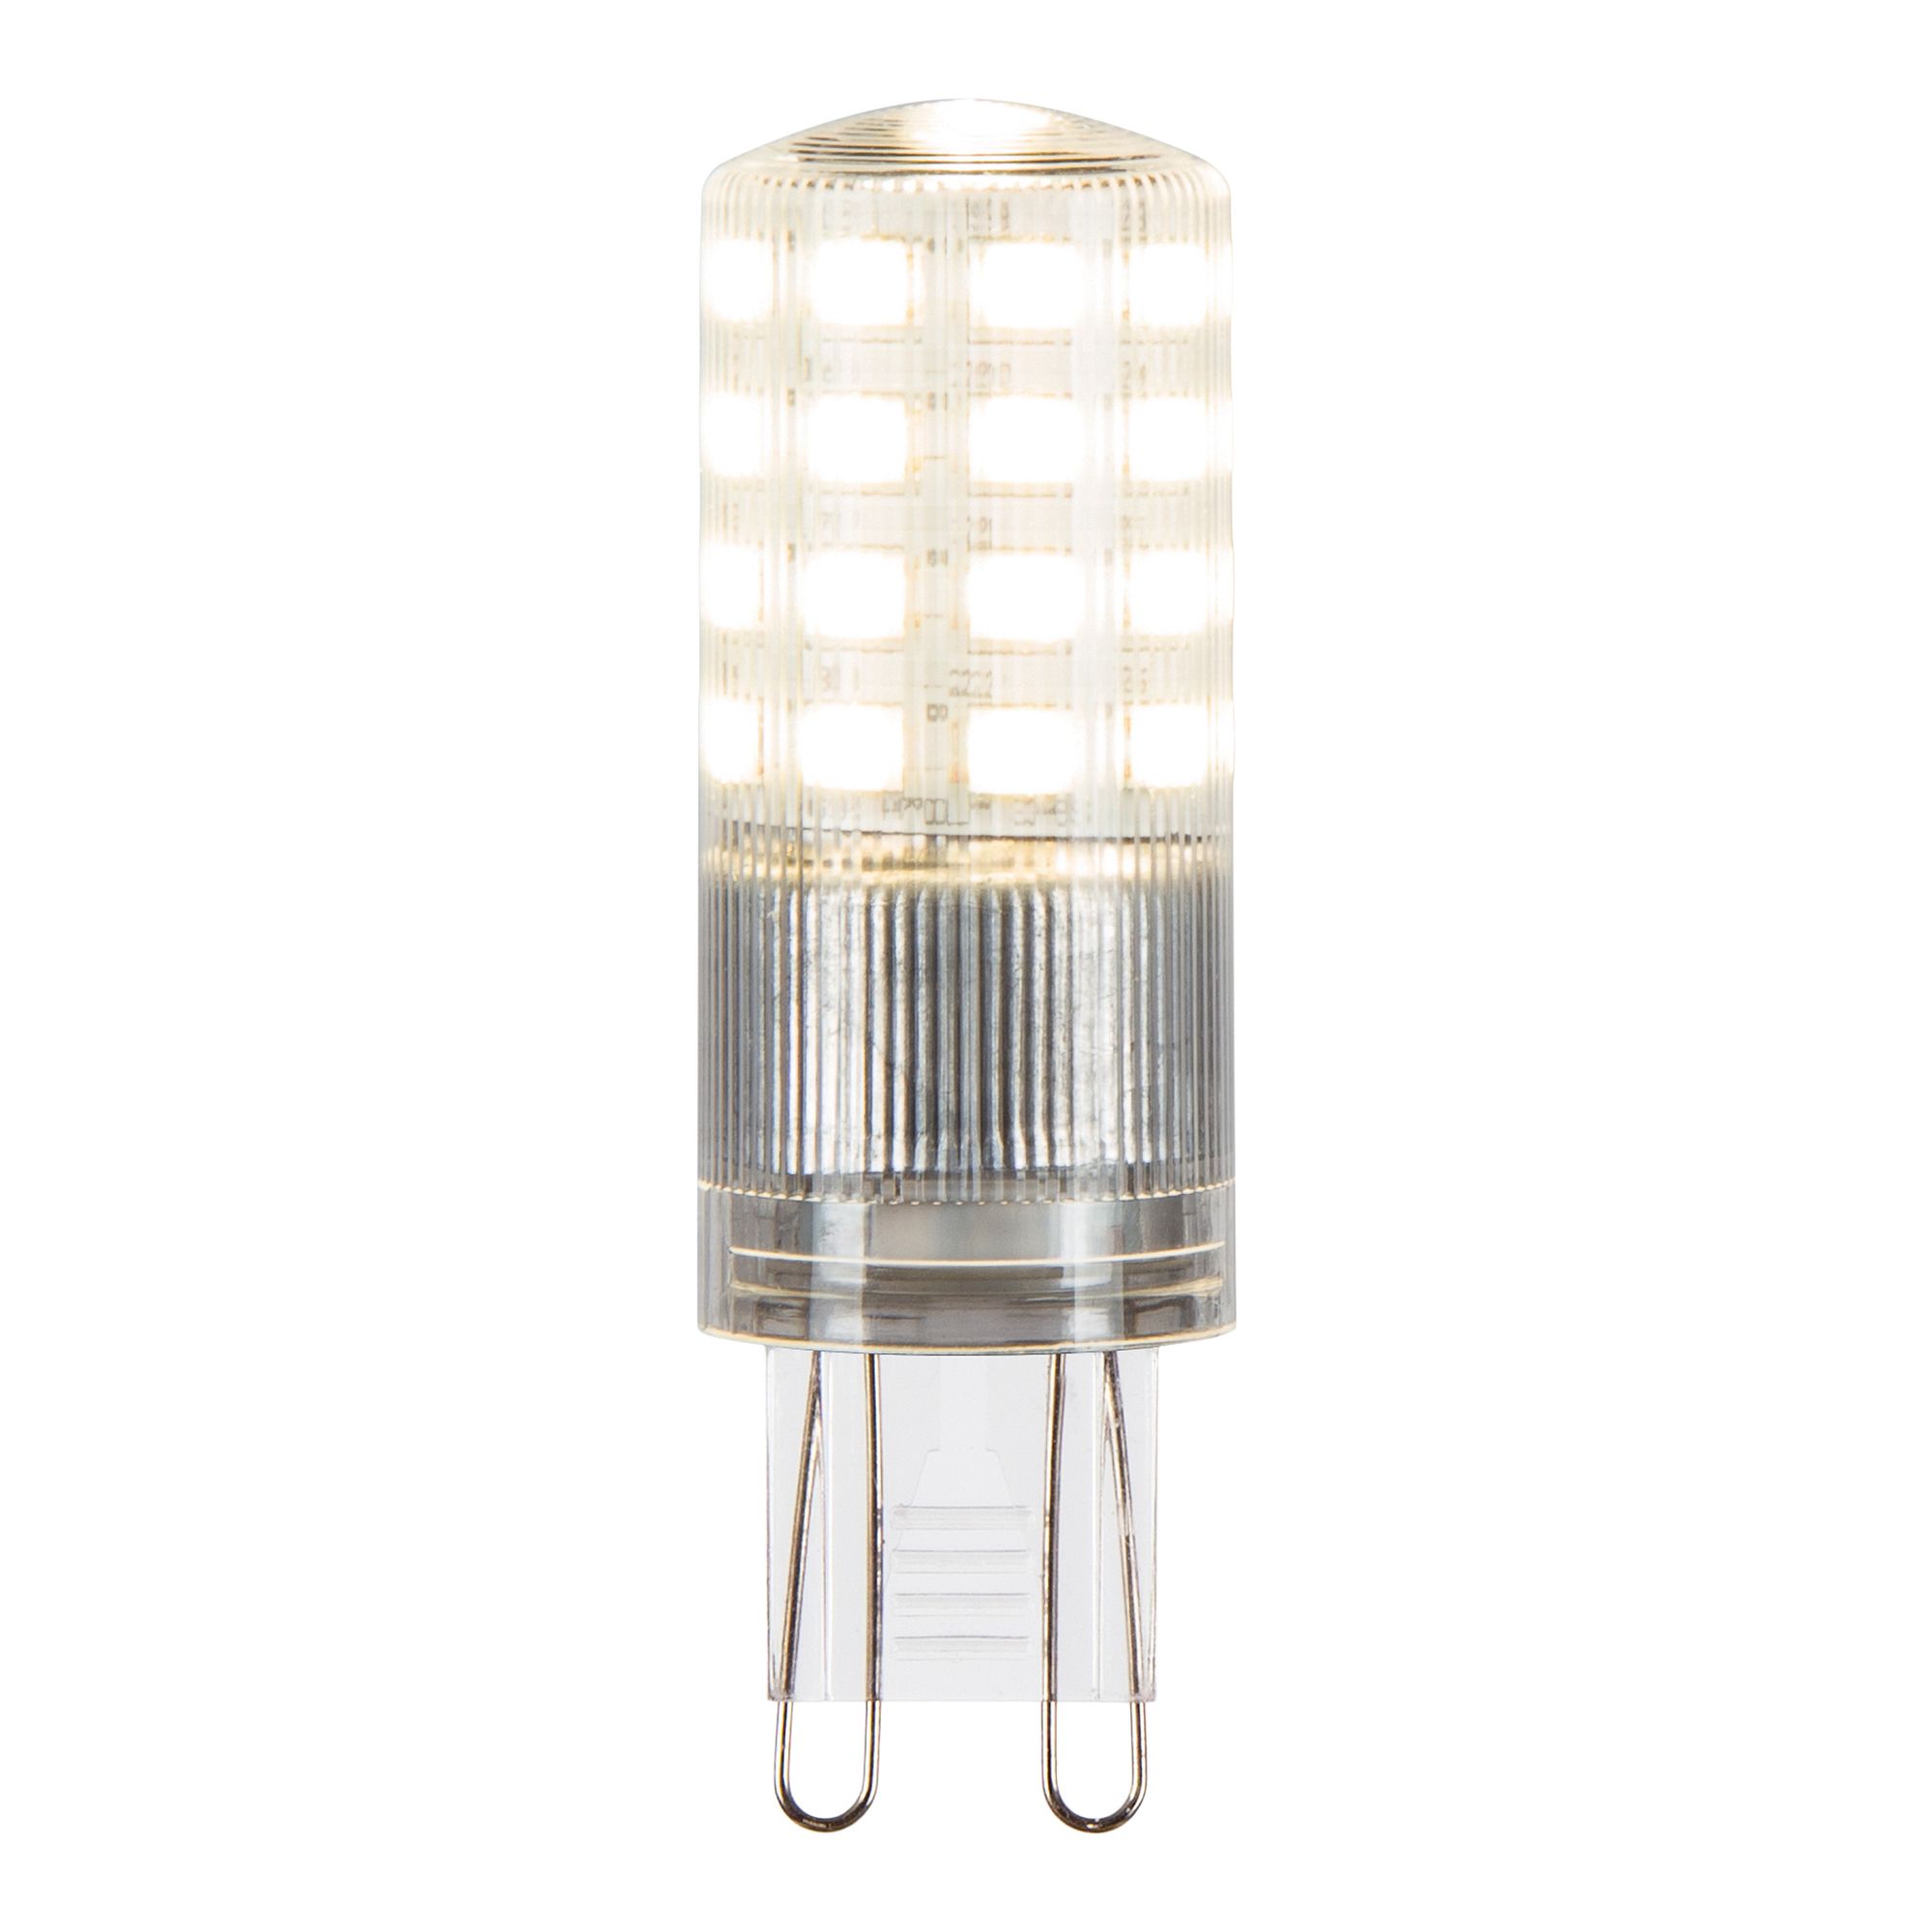 Jacobsen G9 4W Neutral white LED Dimmable Light bulb, Pack of 2